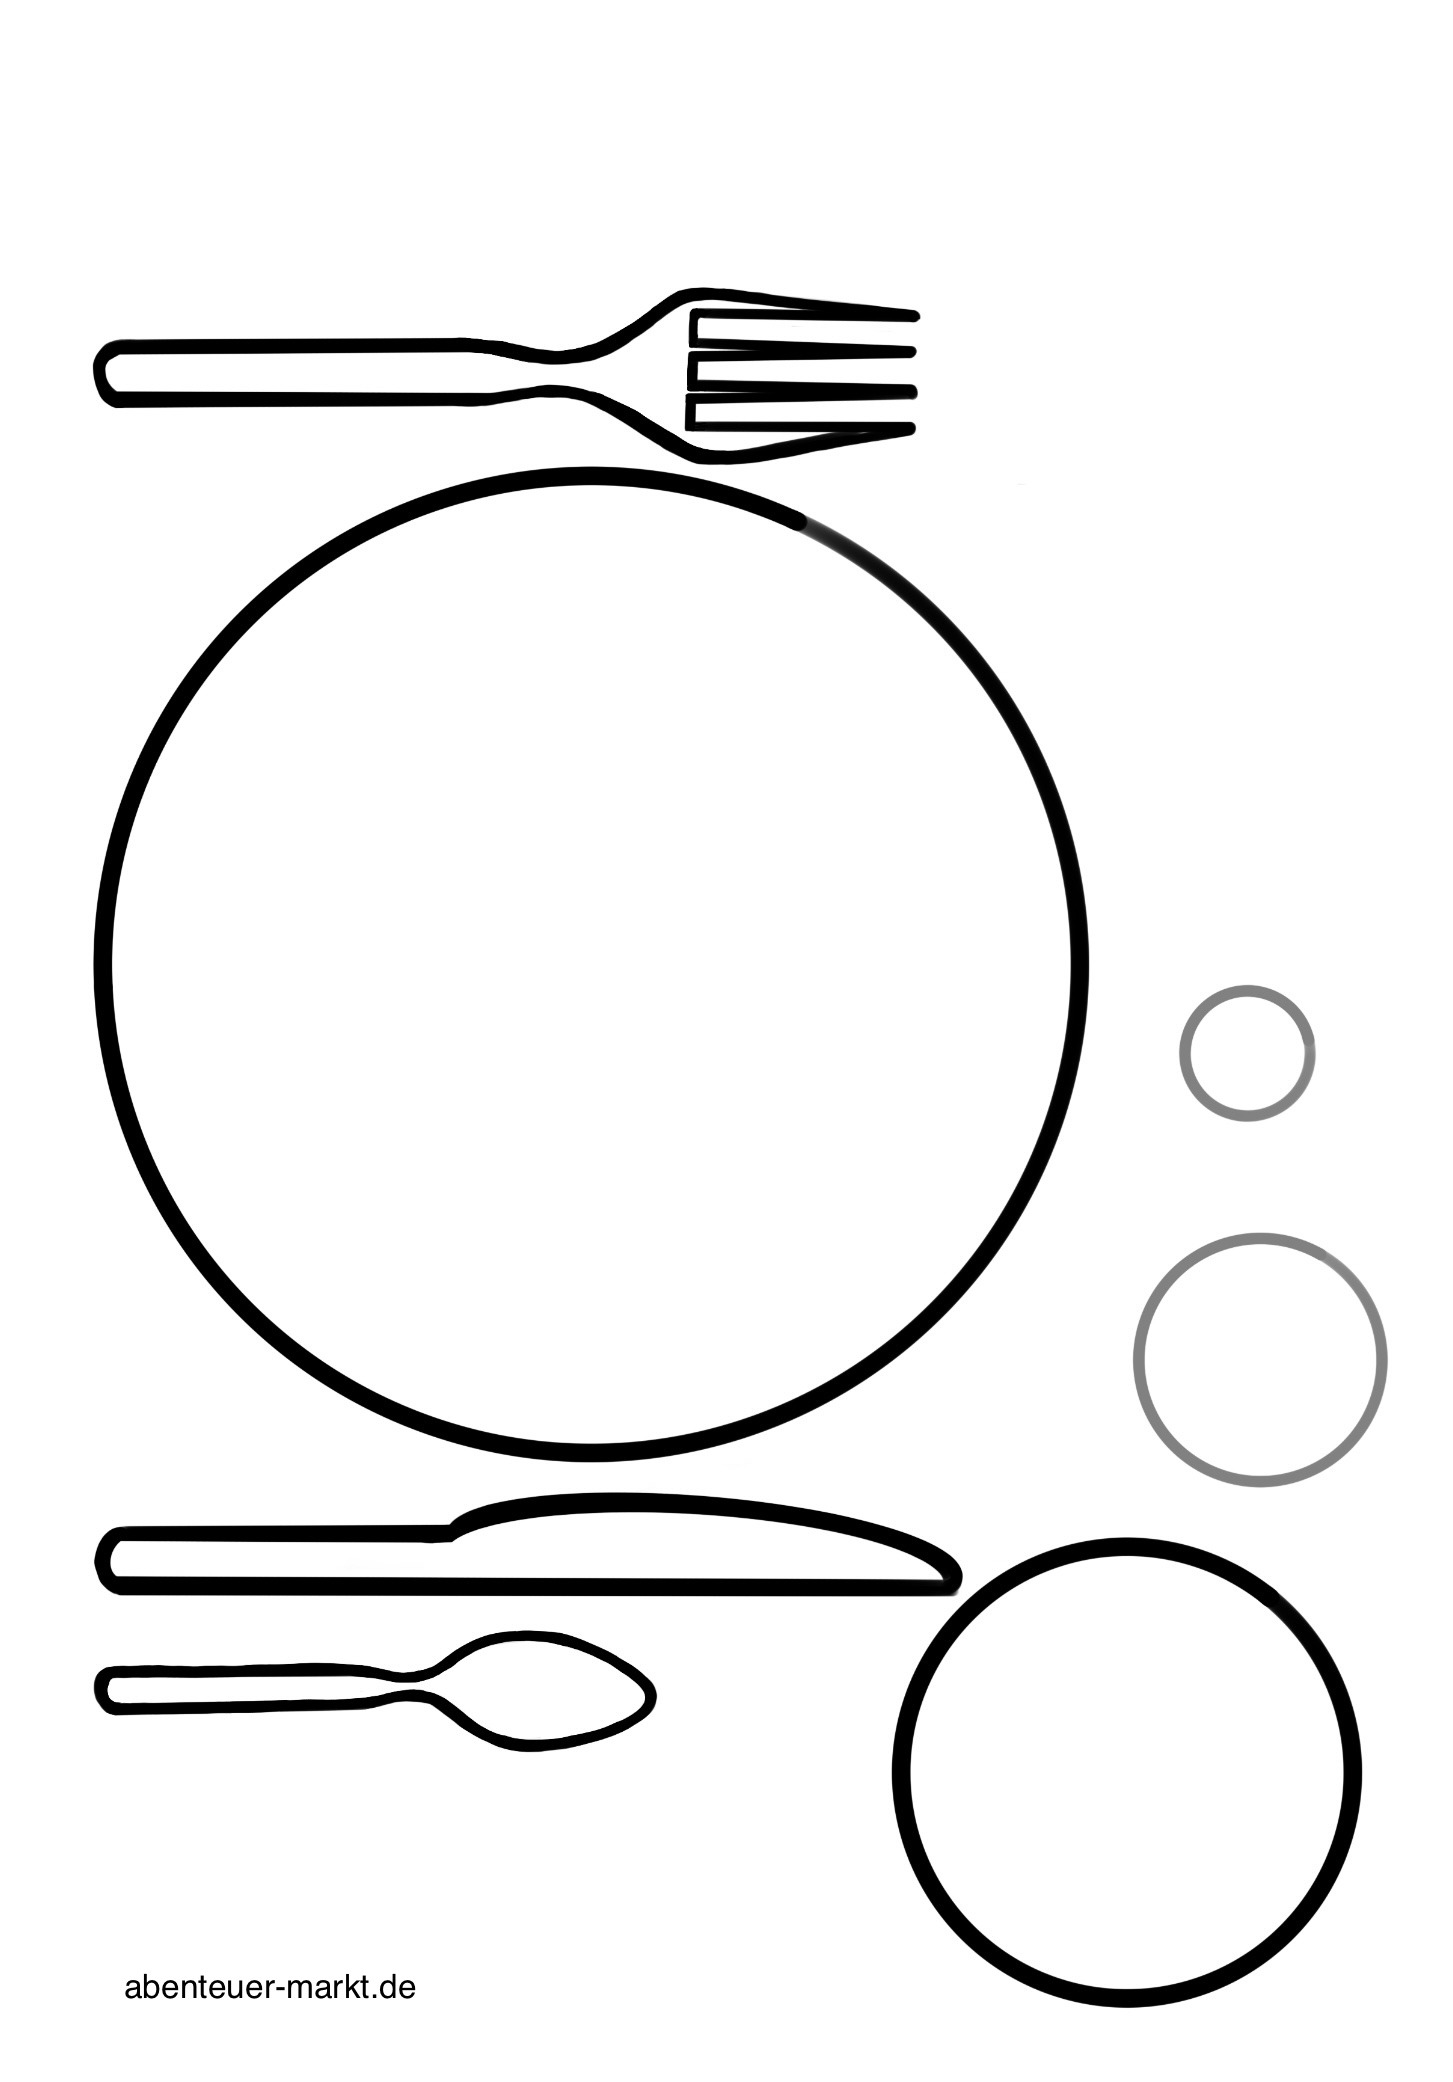 Bild zum Schritt 14 für das Bastel- und DIY-Abenteuer für Kinder: 'Die Blanco- Vorlage mit Ergänzungen für Glas und Frühstücksei.'